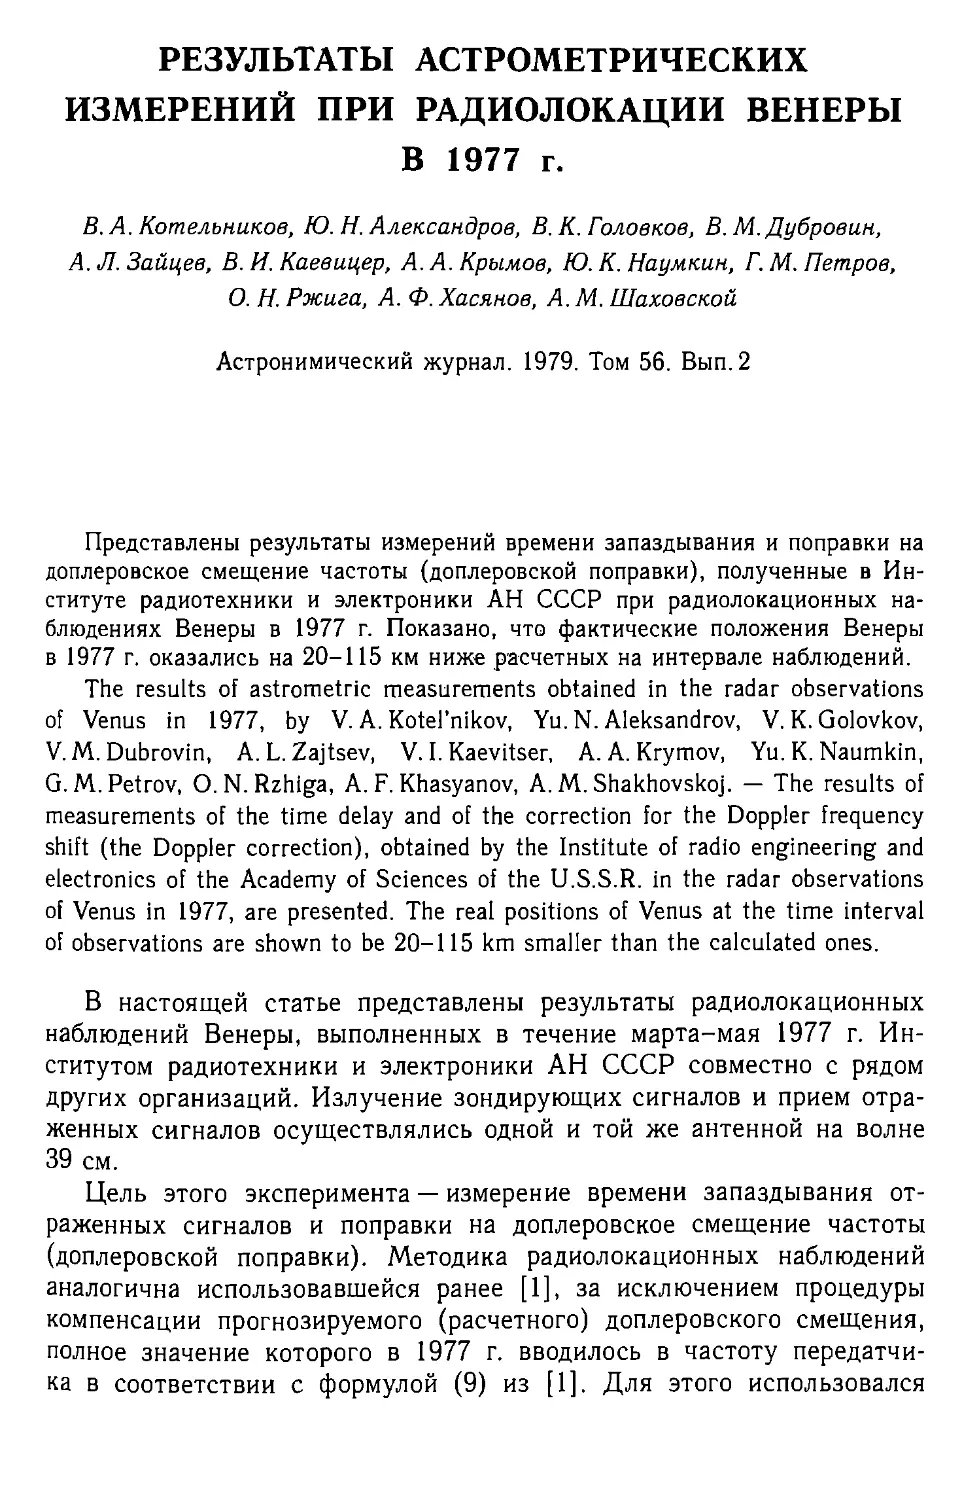 Результаты астрометрических измерений при радиолокации Венеры в 1977 г.